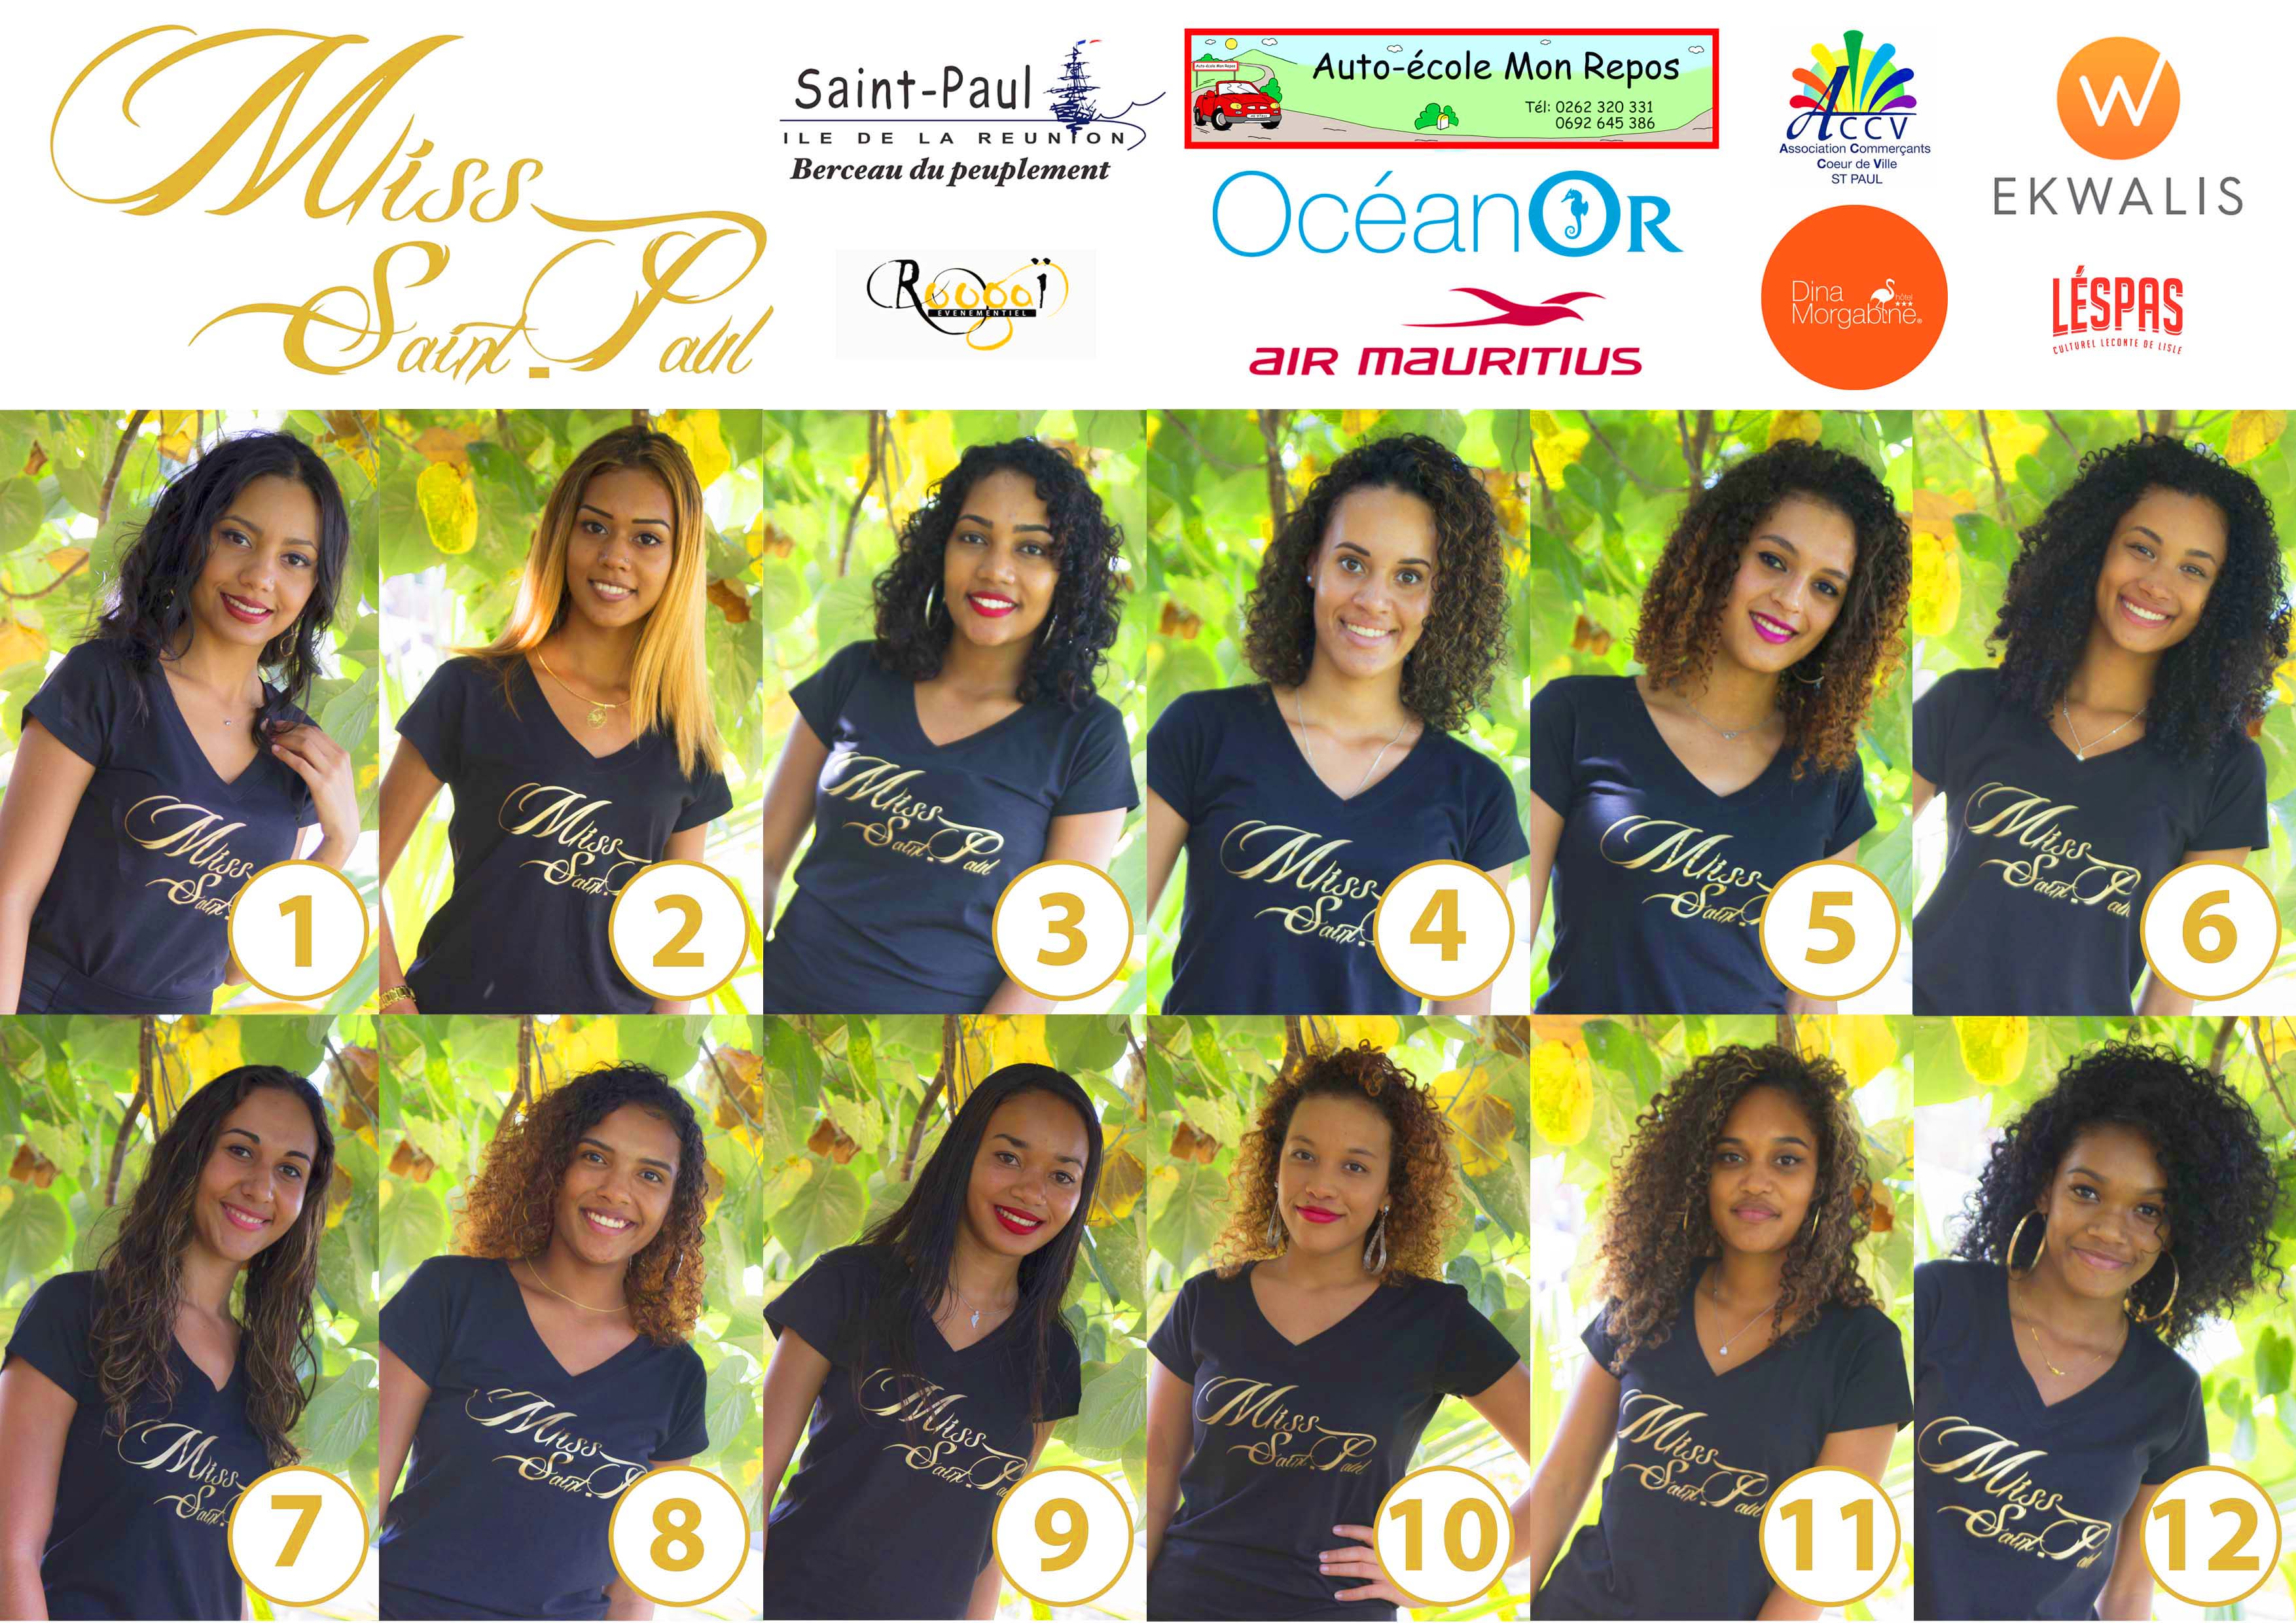 Les 12 candidates Miss Saint-Paul 2019